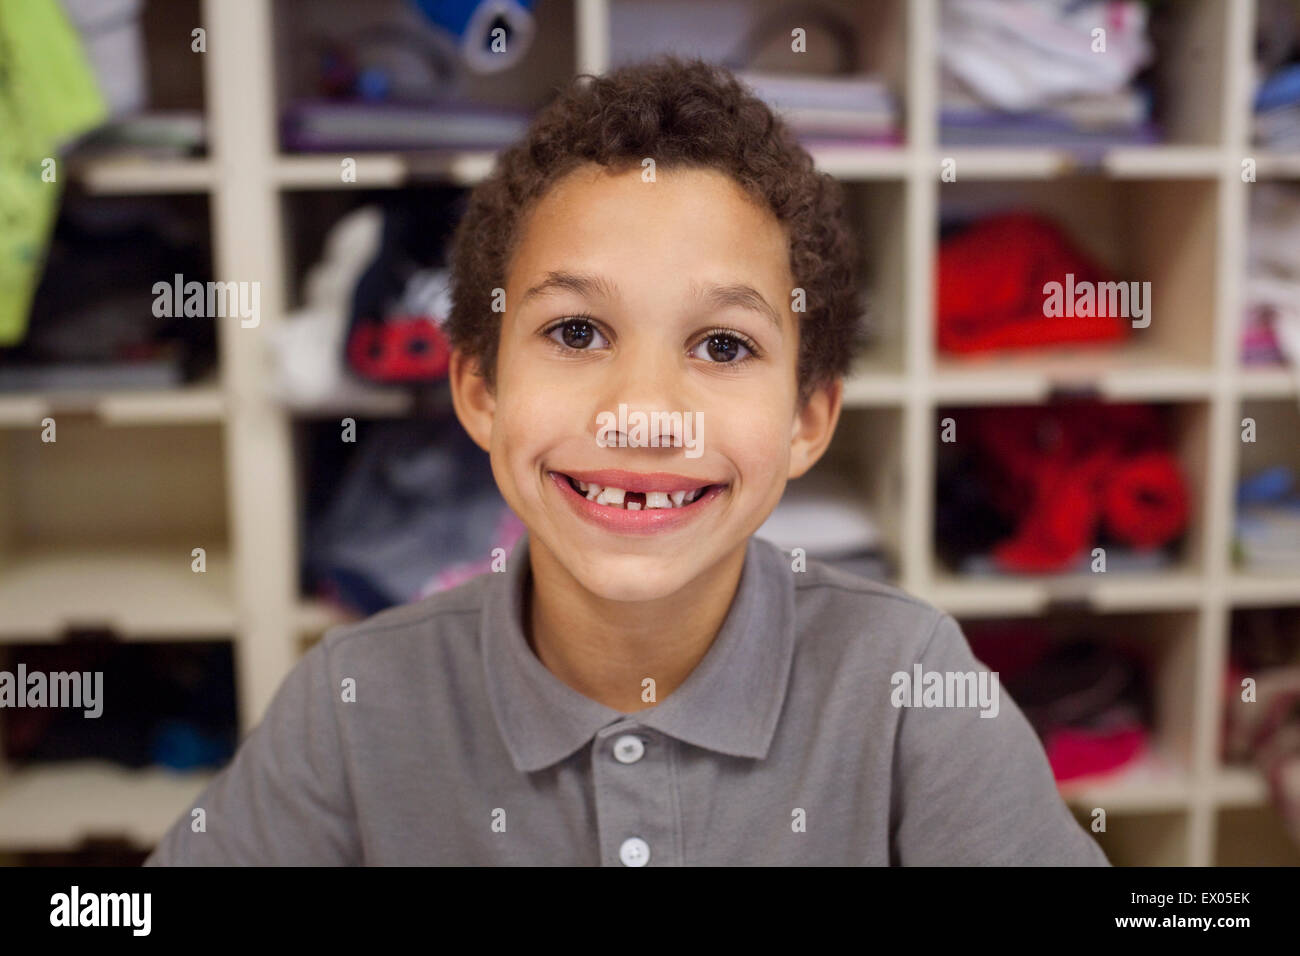 Junge mit breiten Lächeln, Regale im Hintergrund Stockfoto